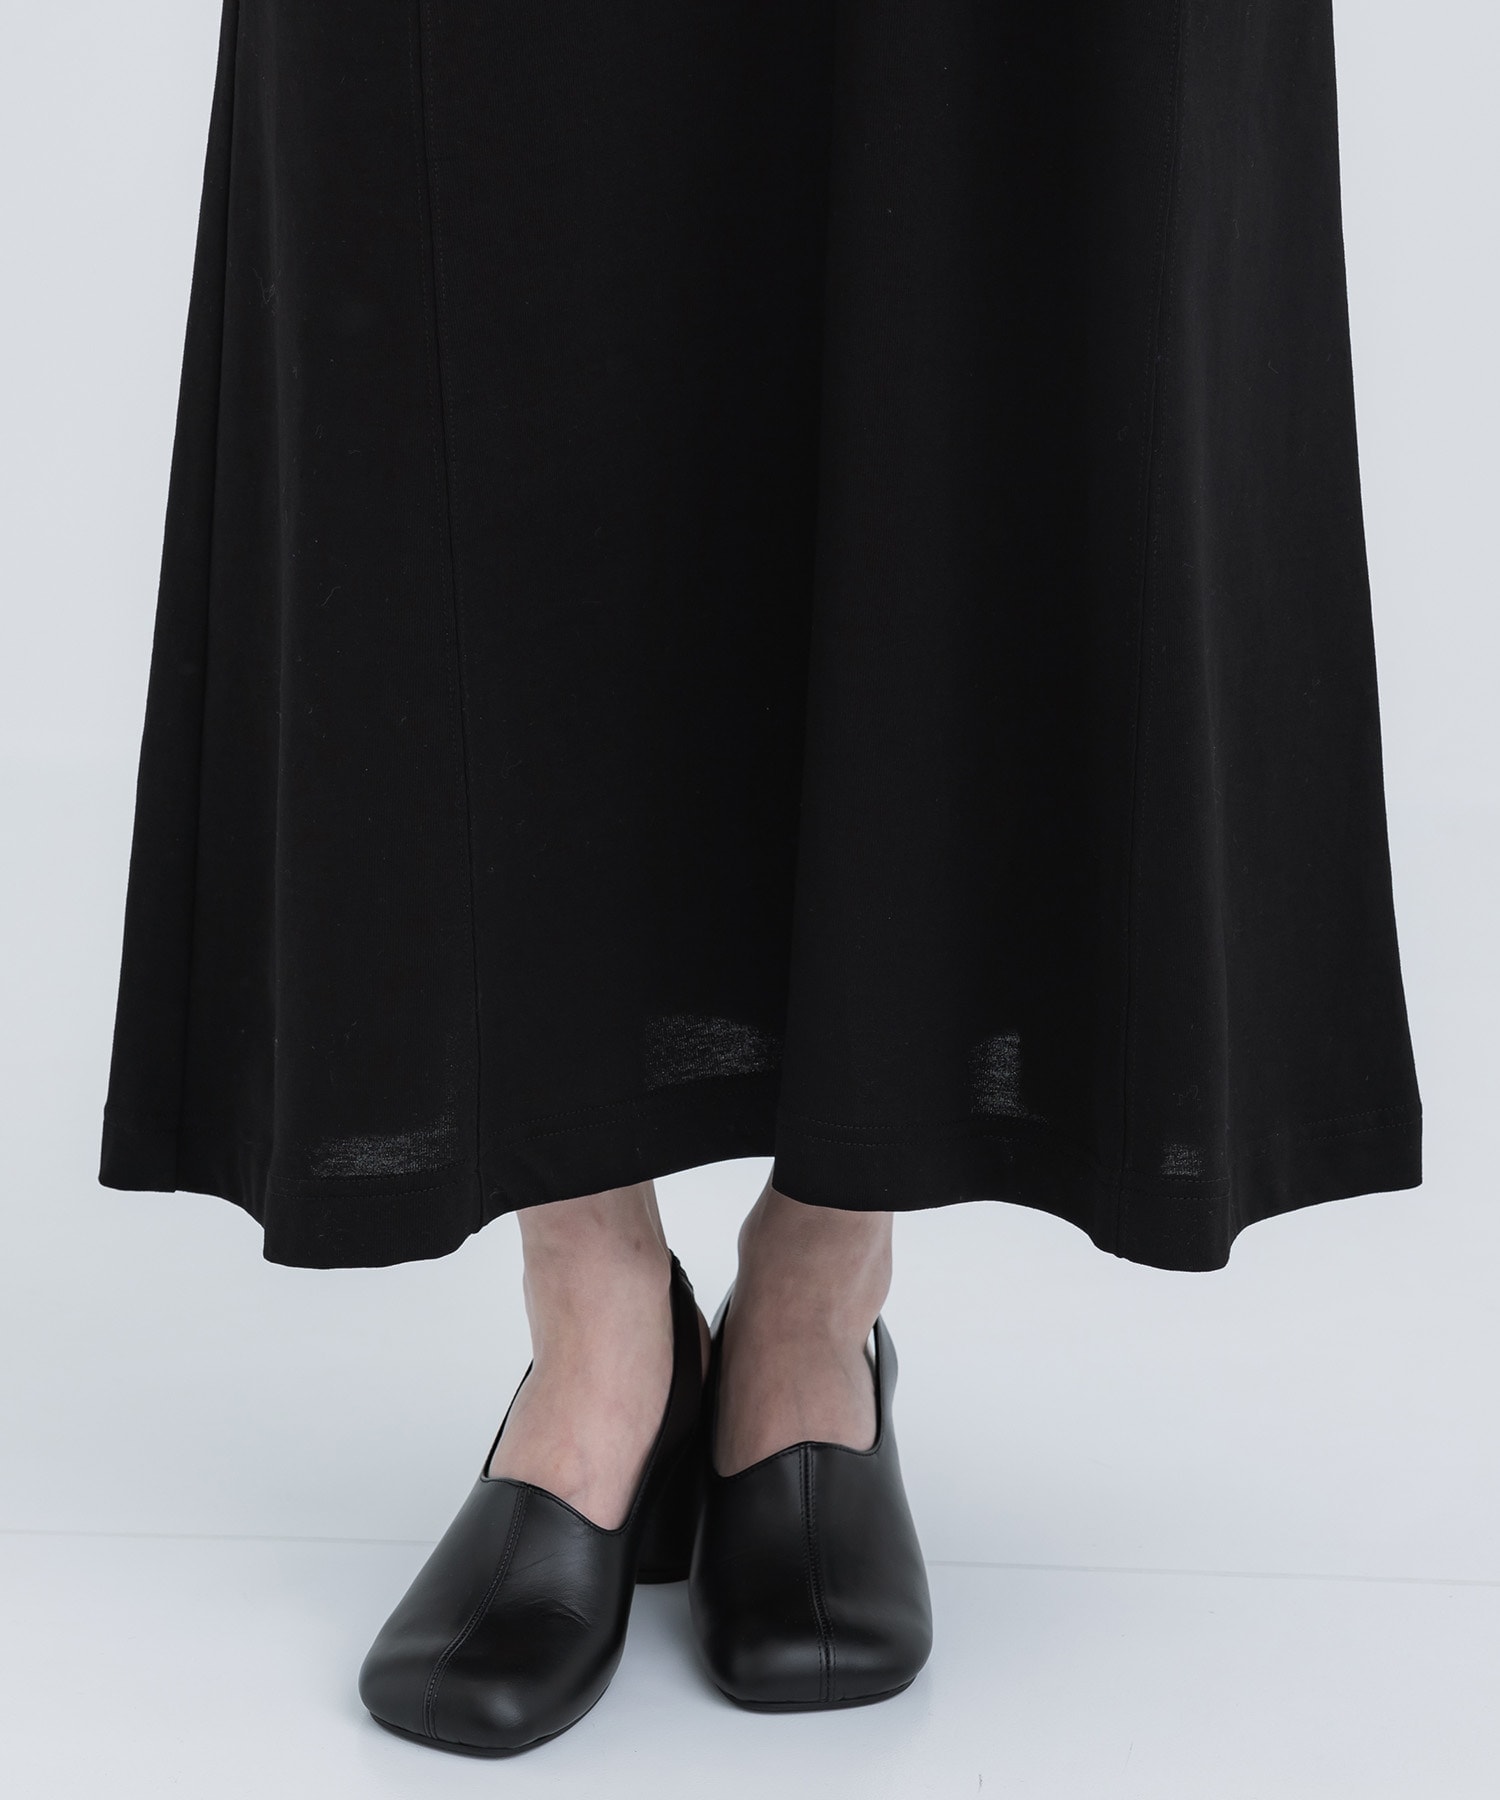 Cotton Jersey Dress Mame Kurogouchi